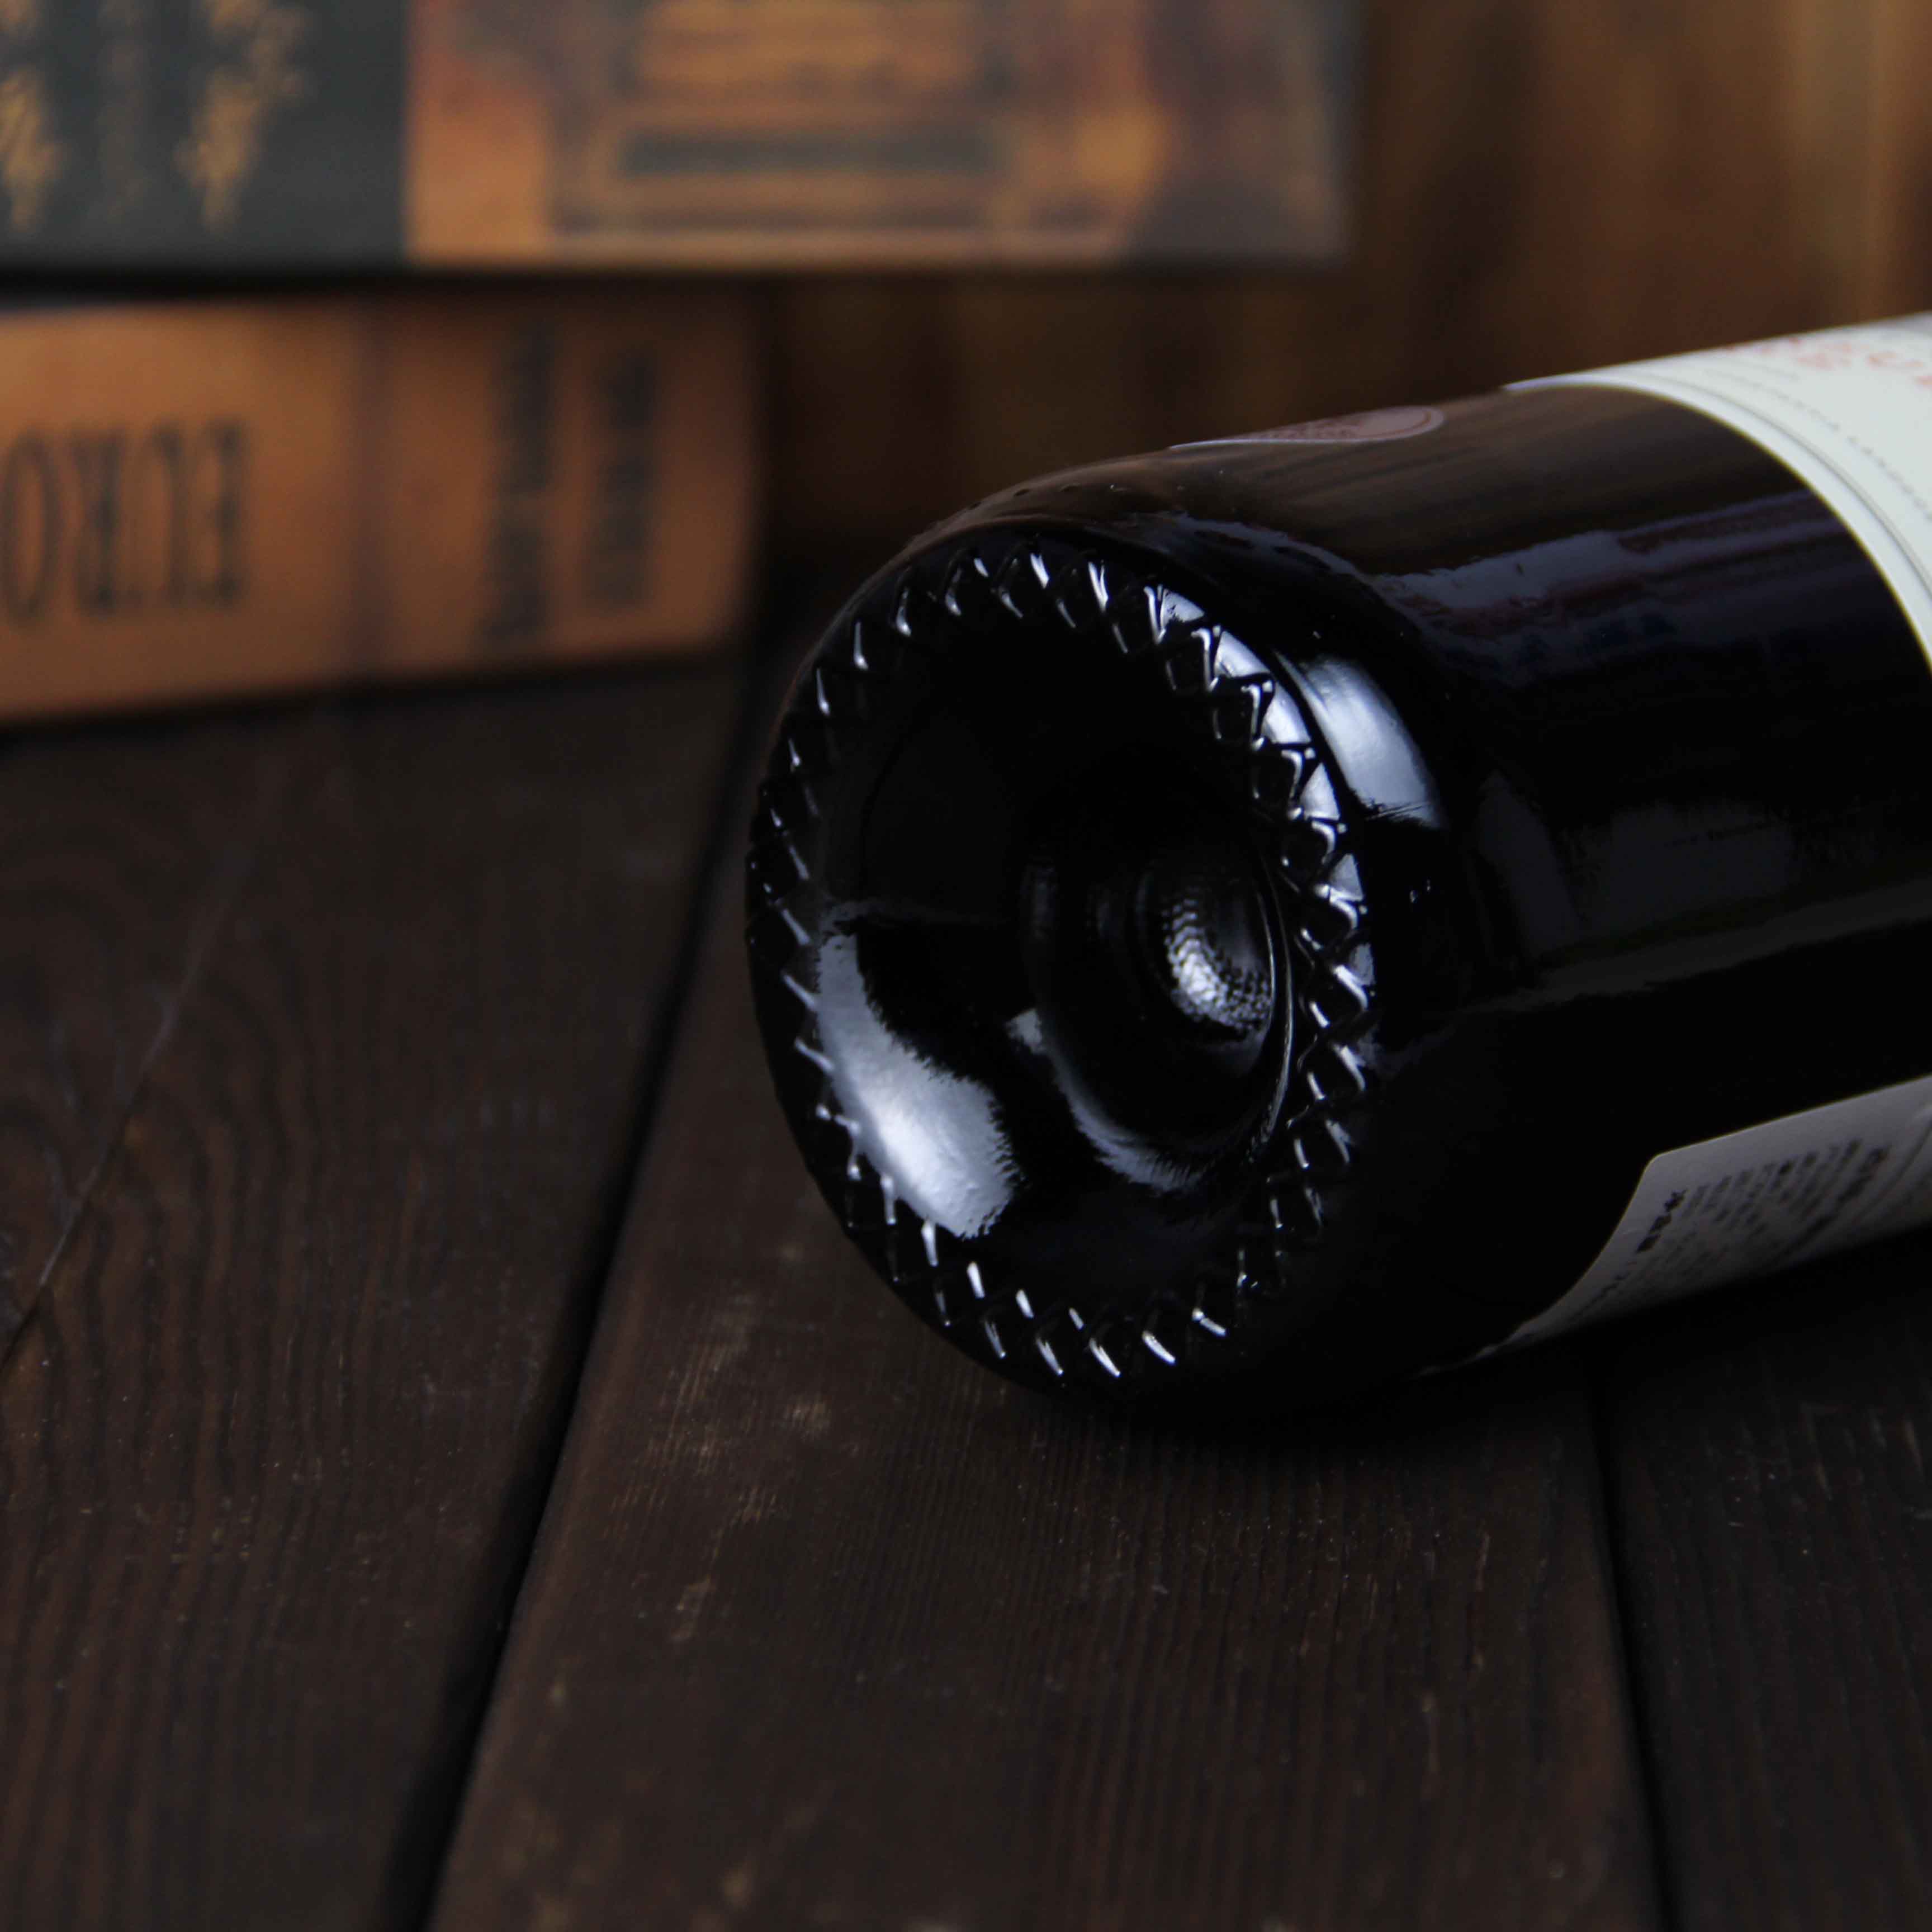 南非开普敦古特·康斯坦提亚酒庄总督珍藏红葡萄酒红酒